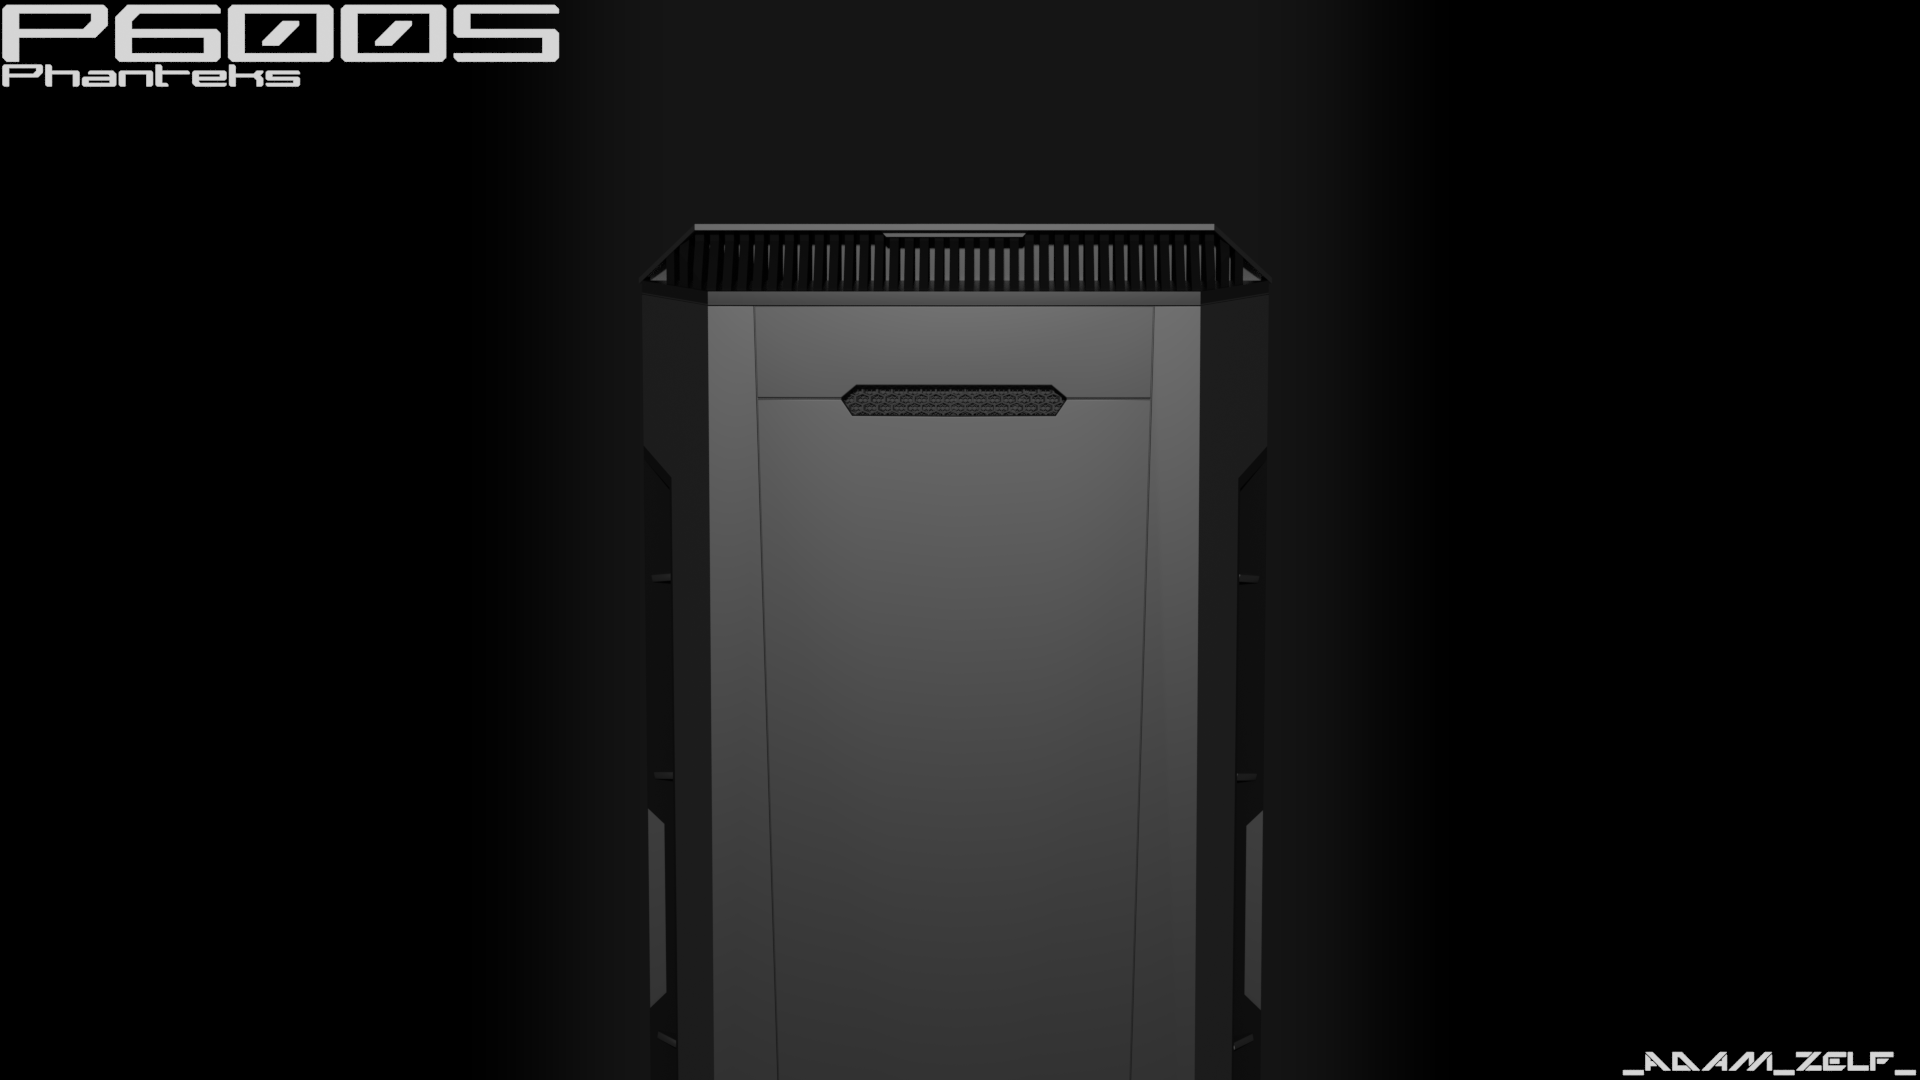 a photo of a phantex p600s PC case